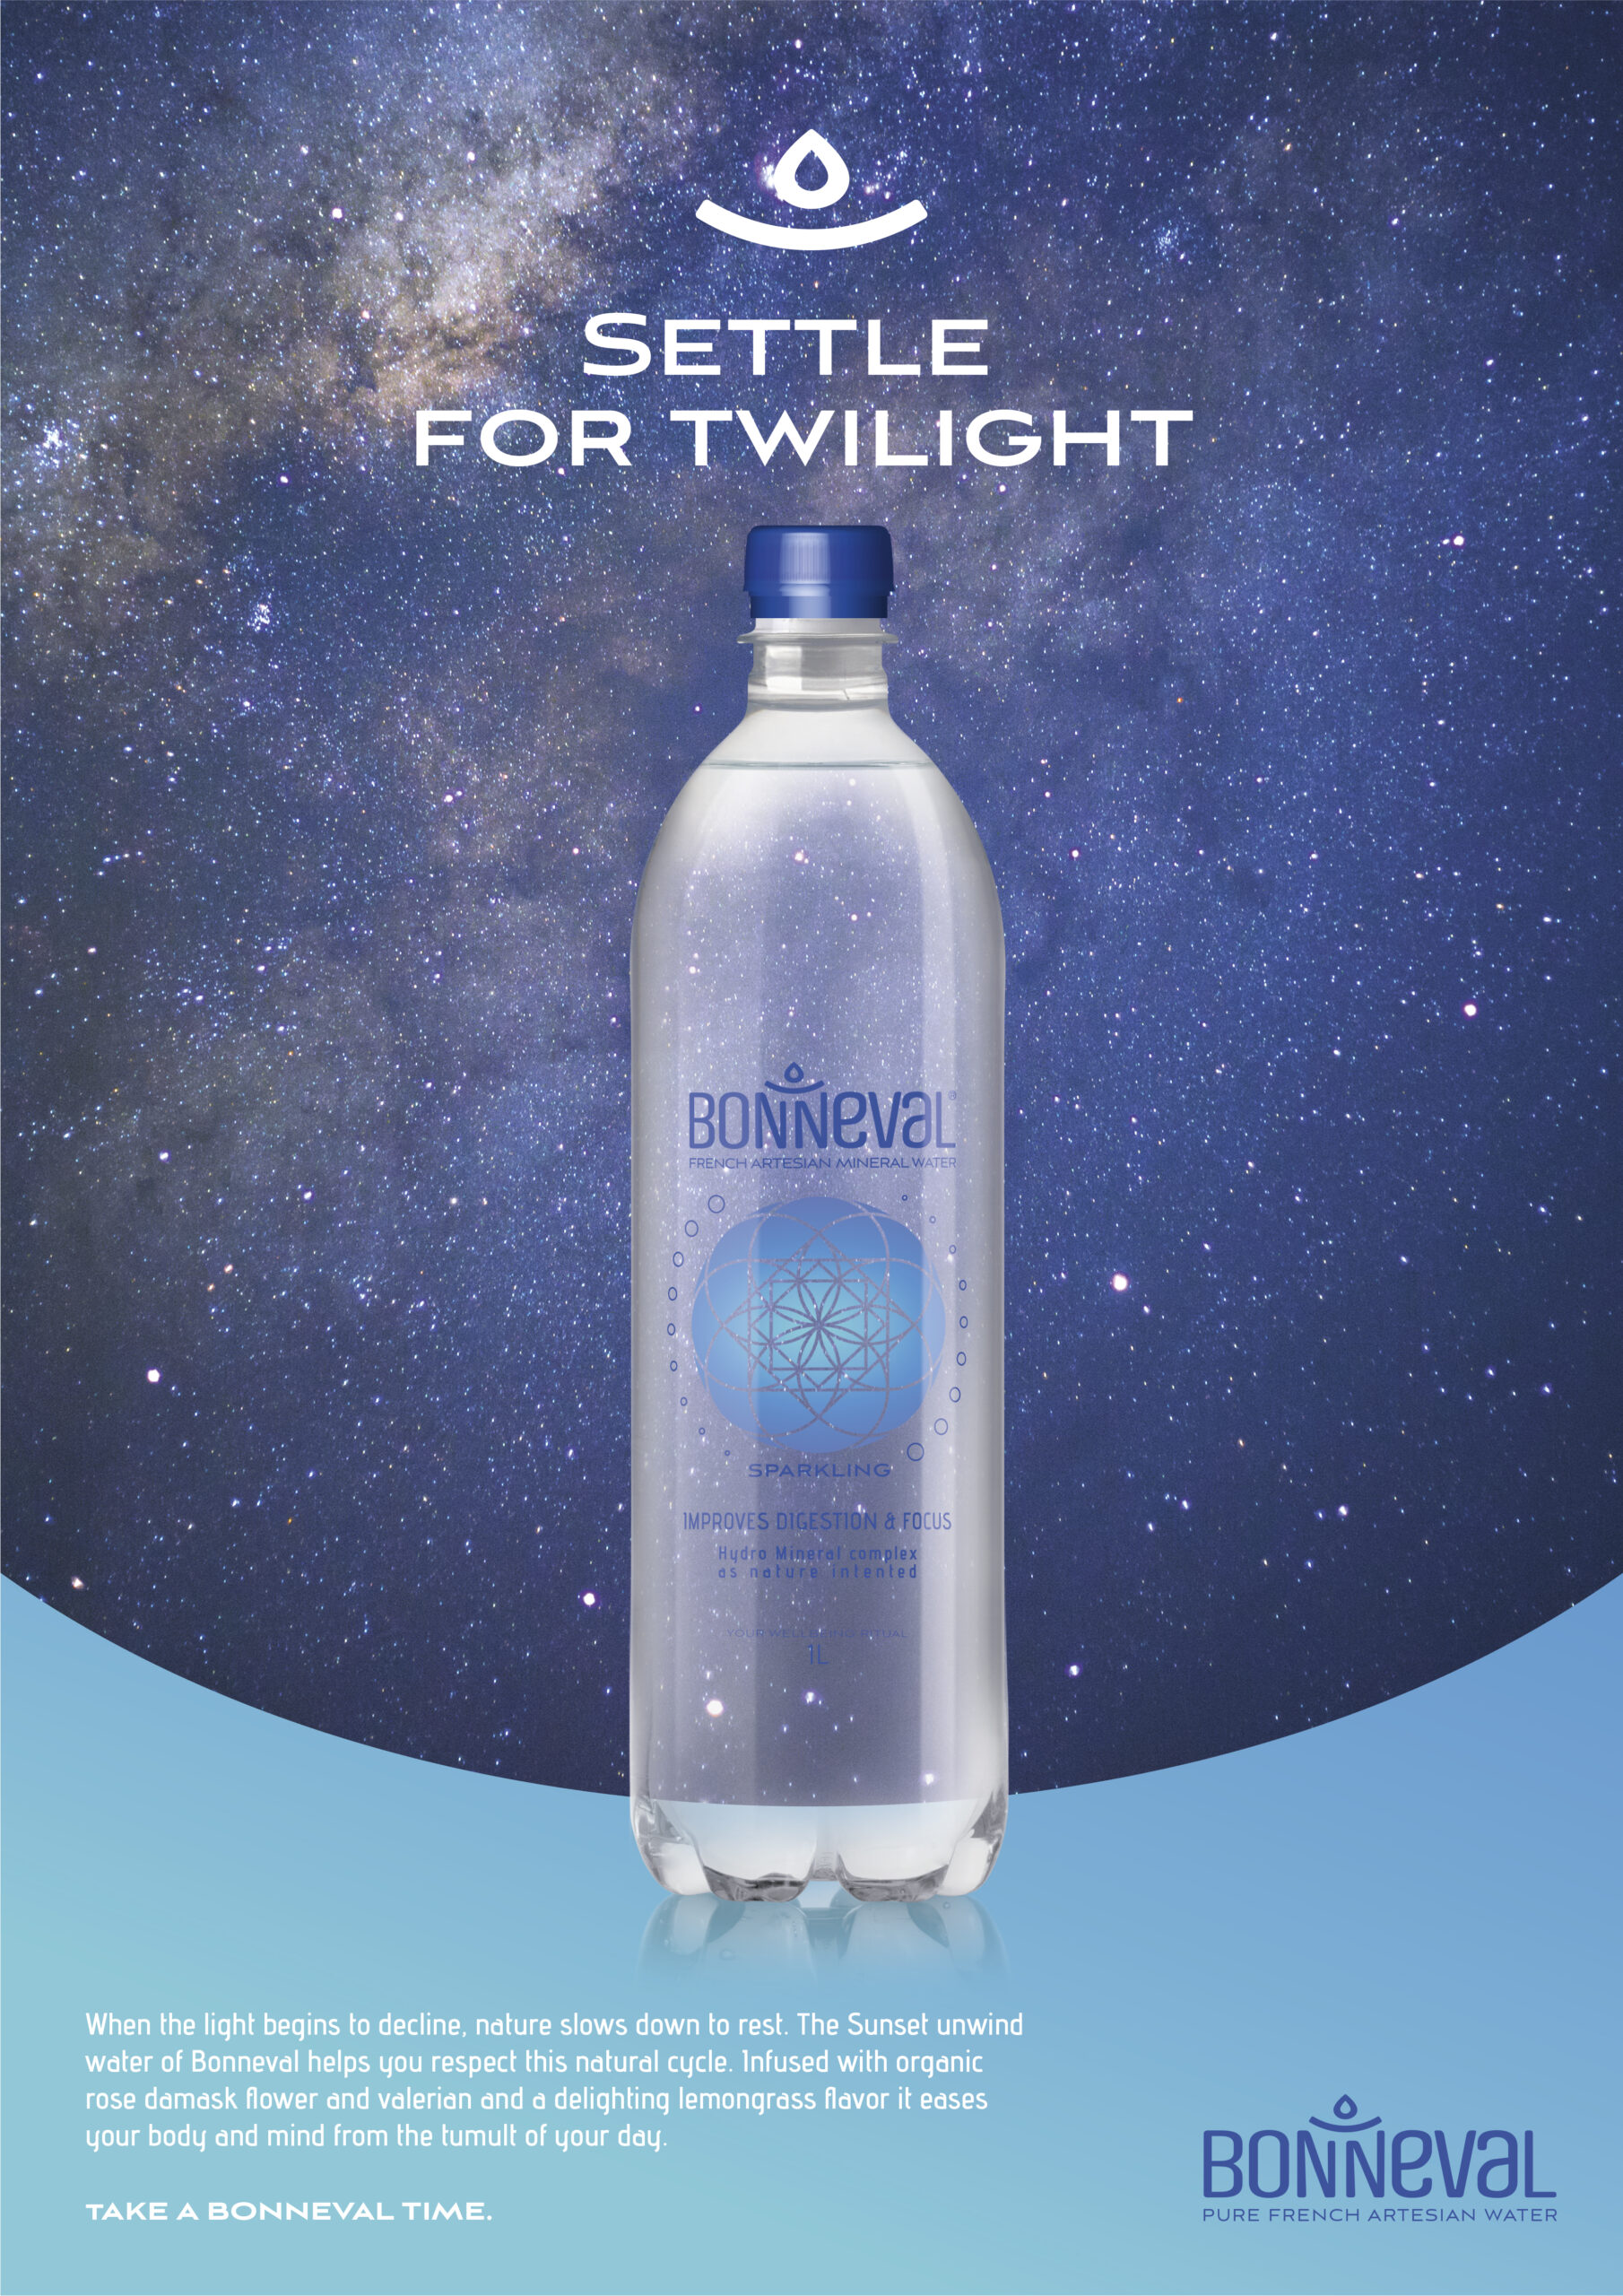 Annonce-presse pour la marque d'eau minérale Bonneval. Visuel d'une bouteille d'eau sur fond de ciel étoilé.